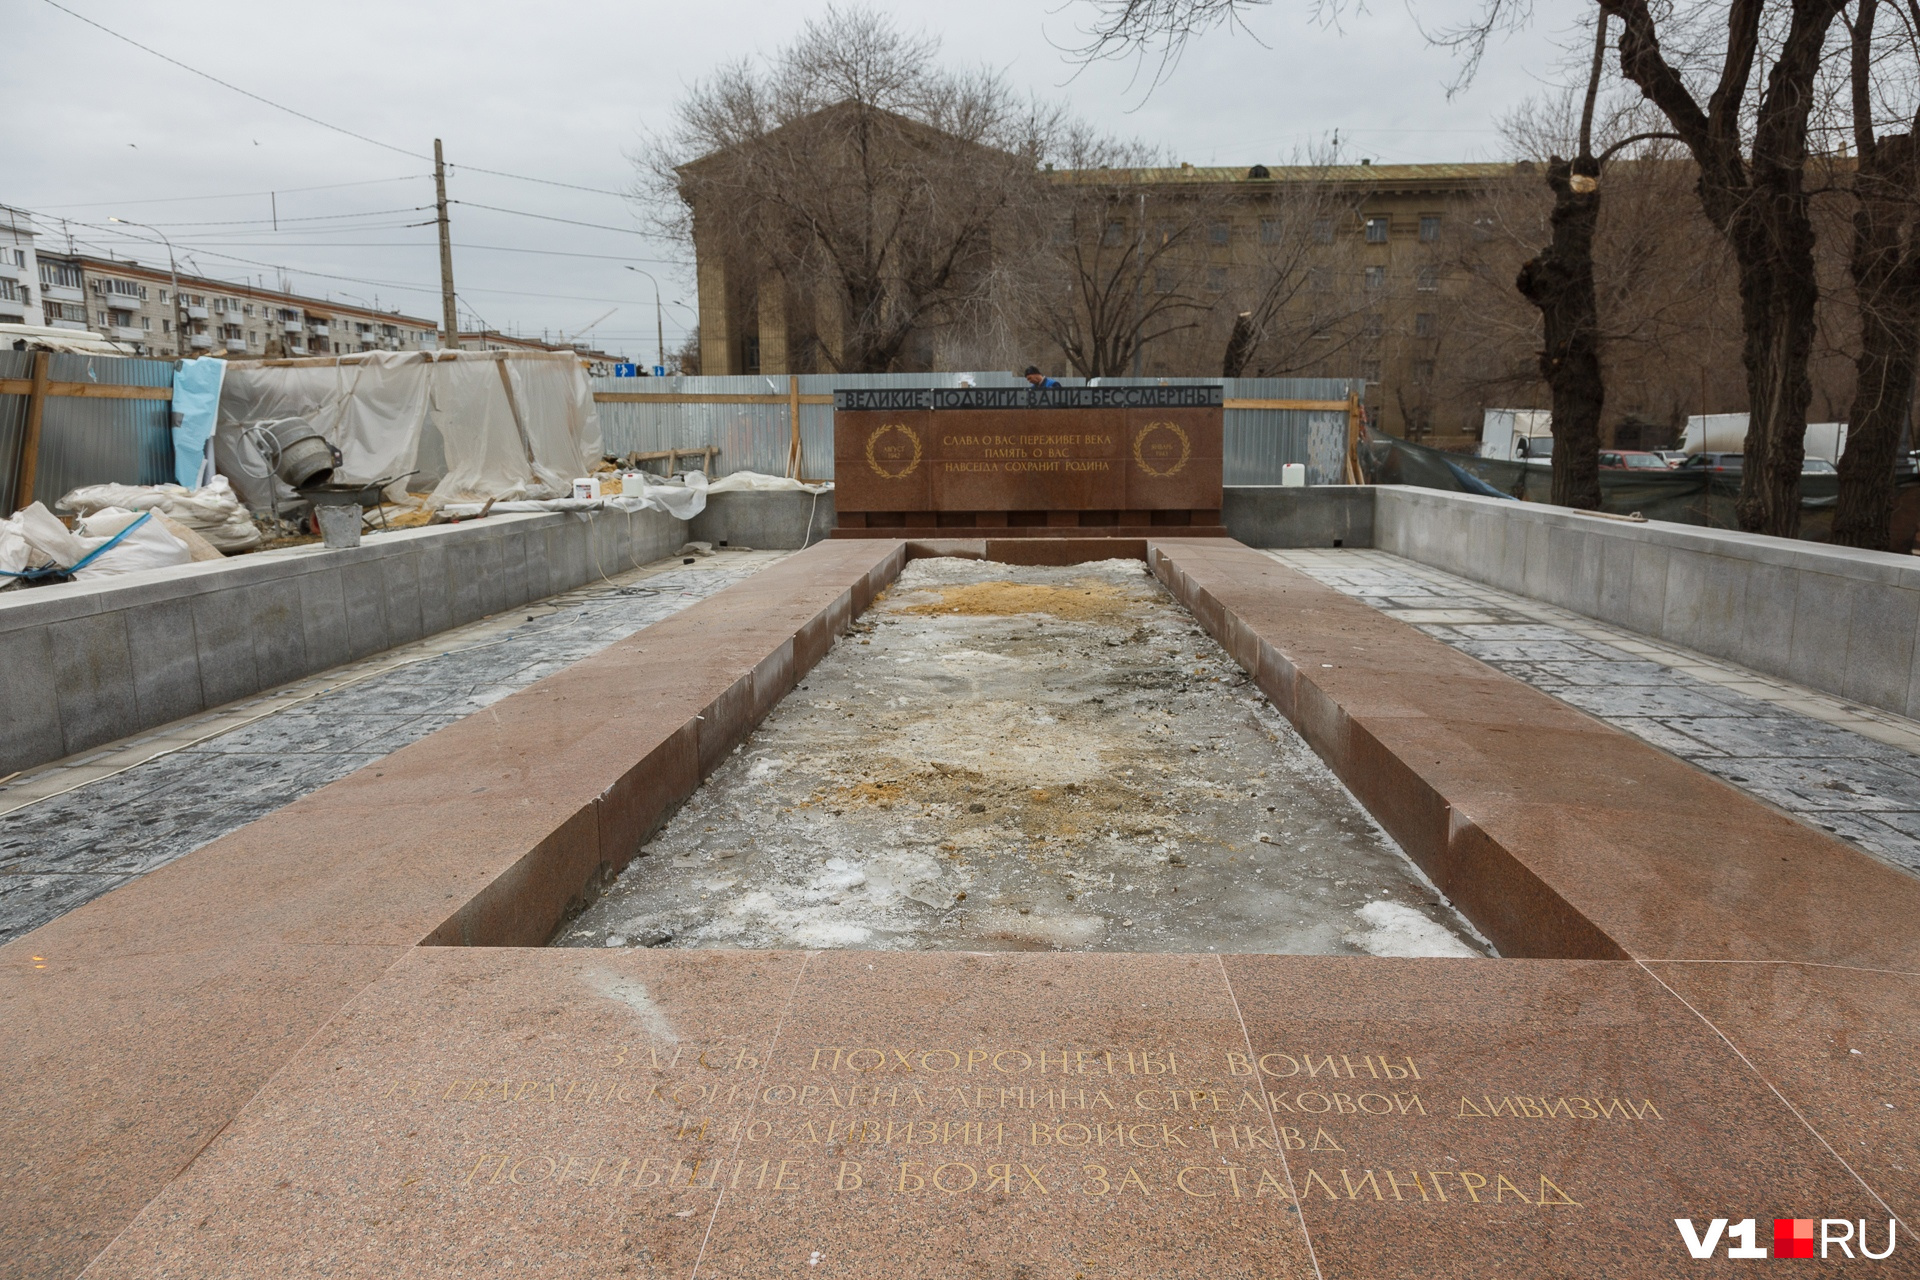 Реставрацию памятника федерального значения чиновники сочли законченной